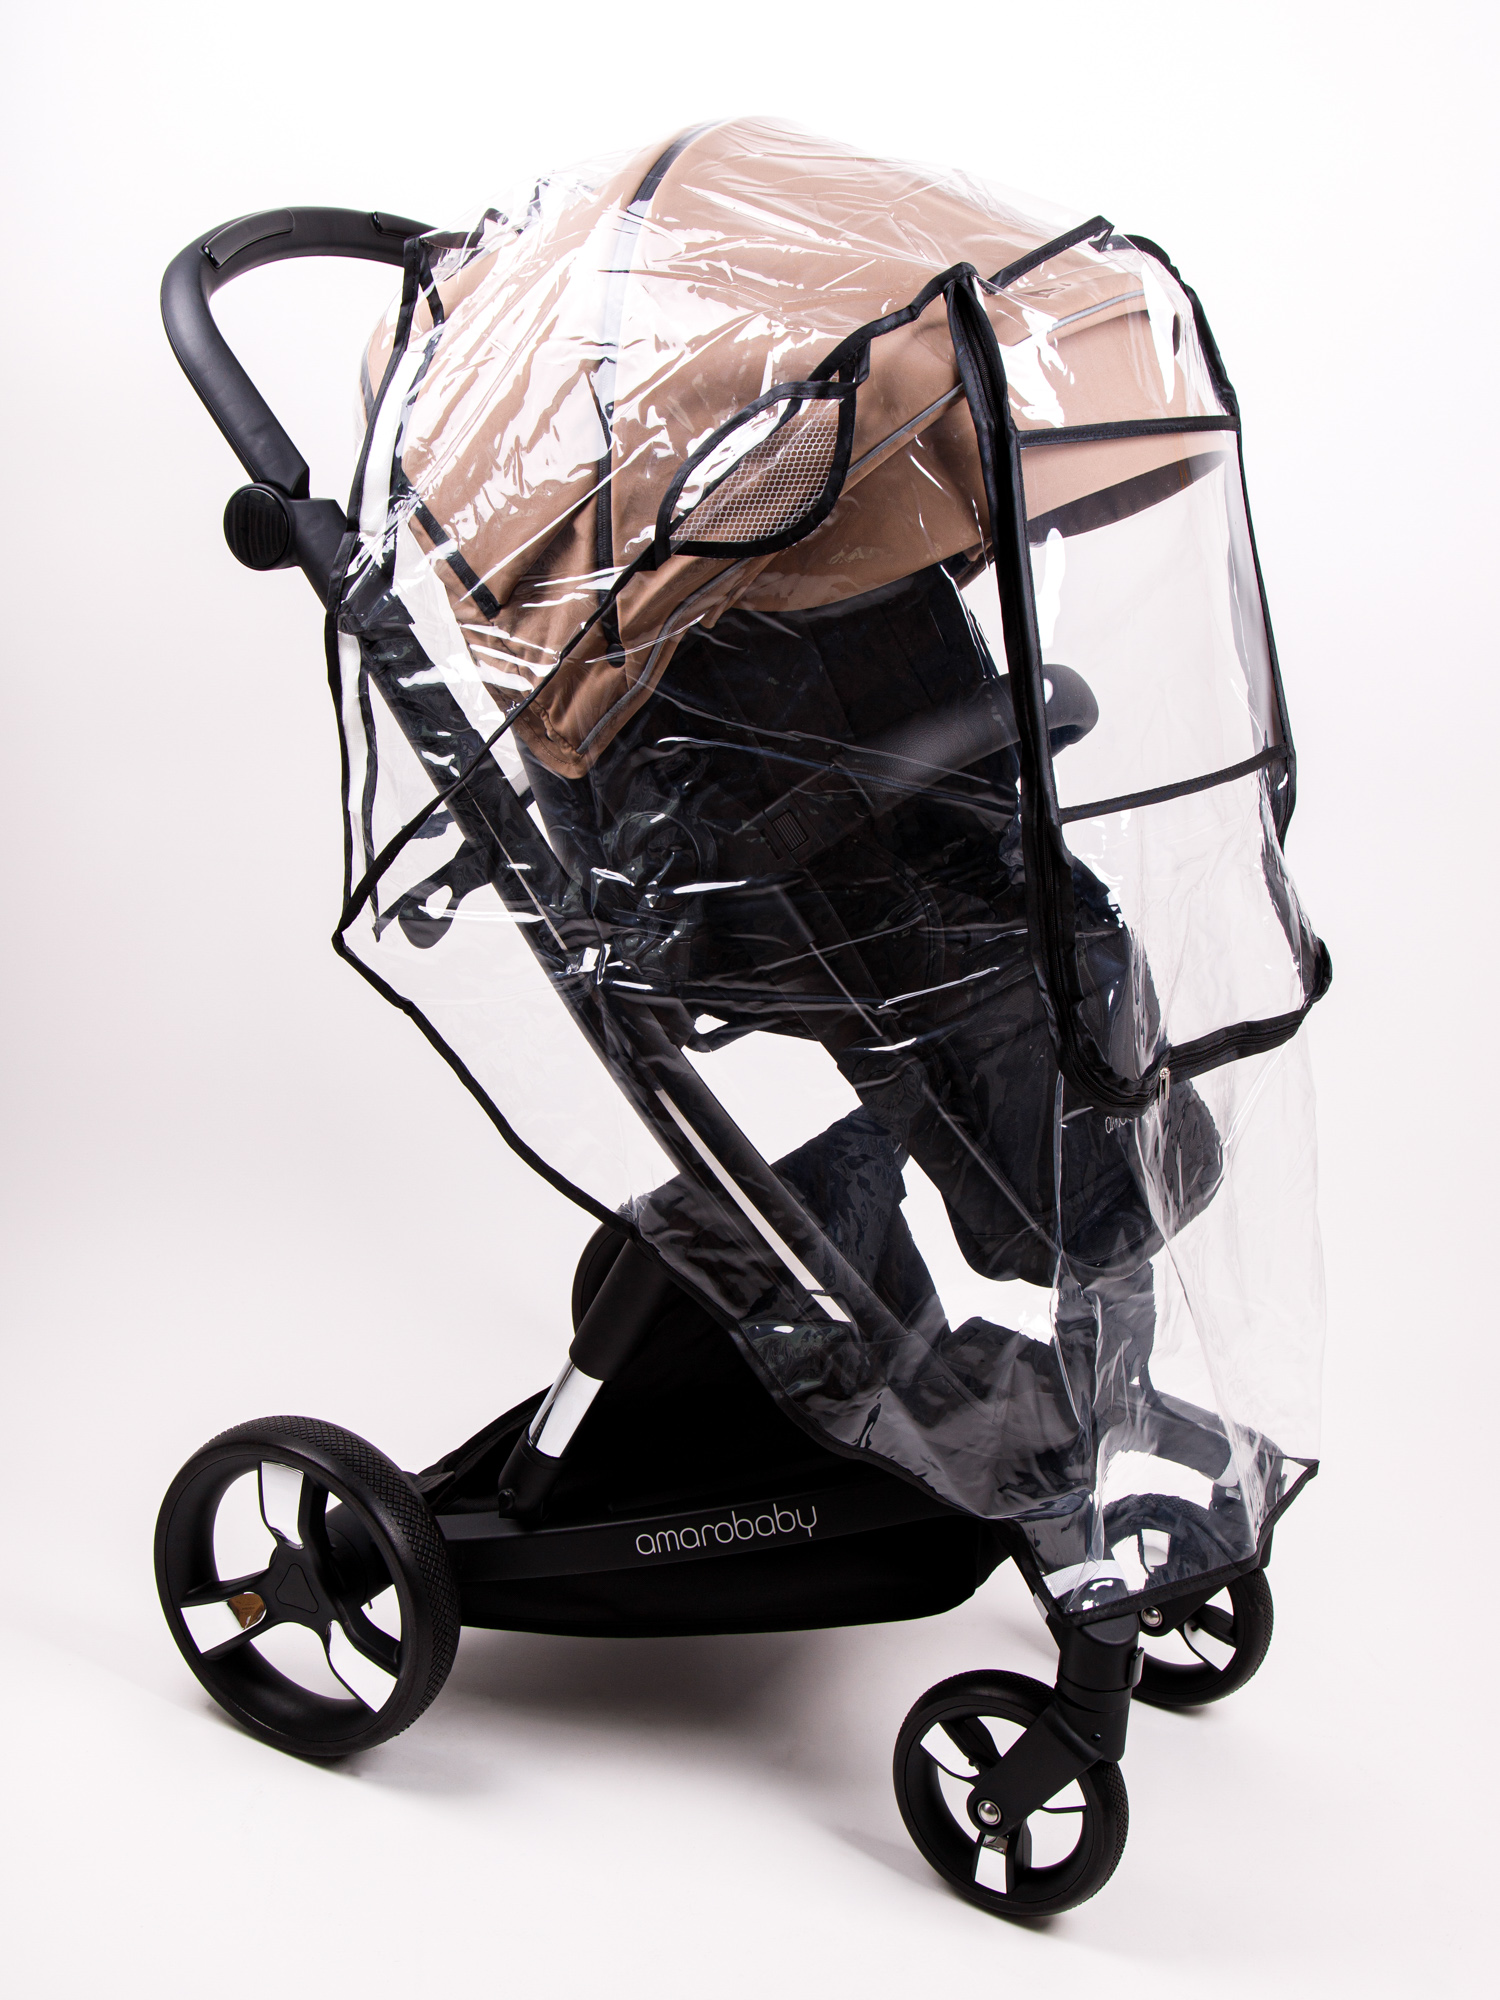 Купить детские коляски и аксессуары, цены на коляски и аксессуары в интернет магазине Бубль-Гум